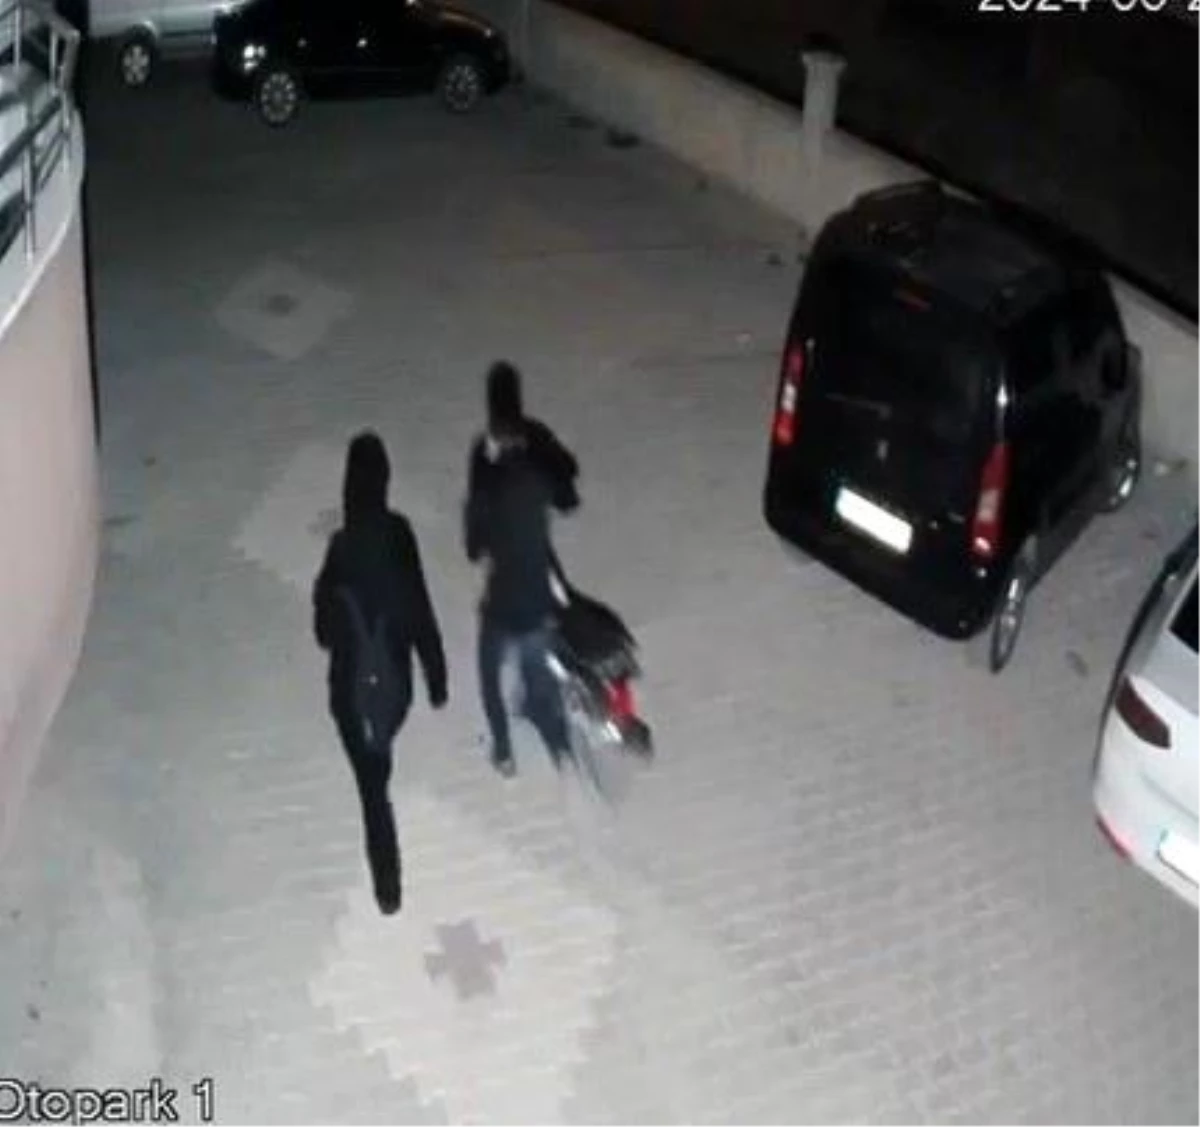 Konya'da Motosiklet Hırsızlığına Karışan 2 Kişi Tutuklandı